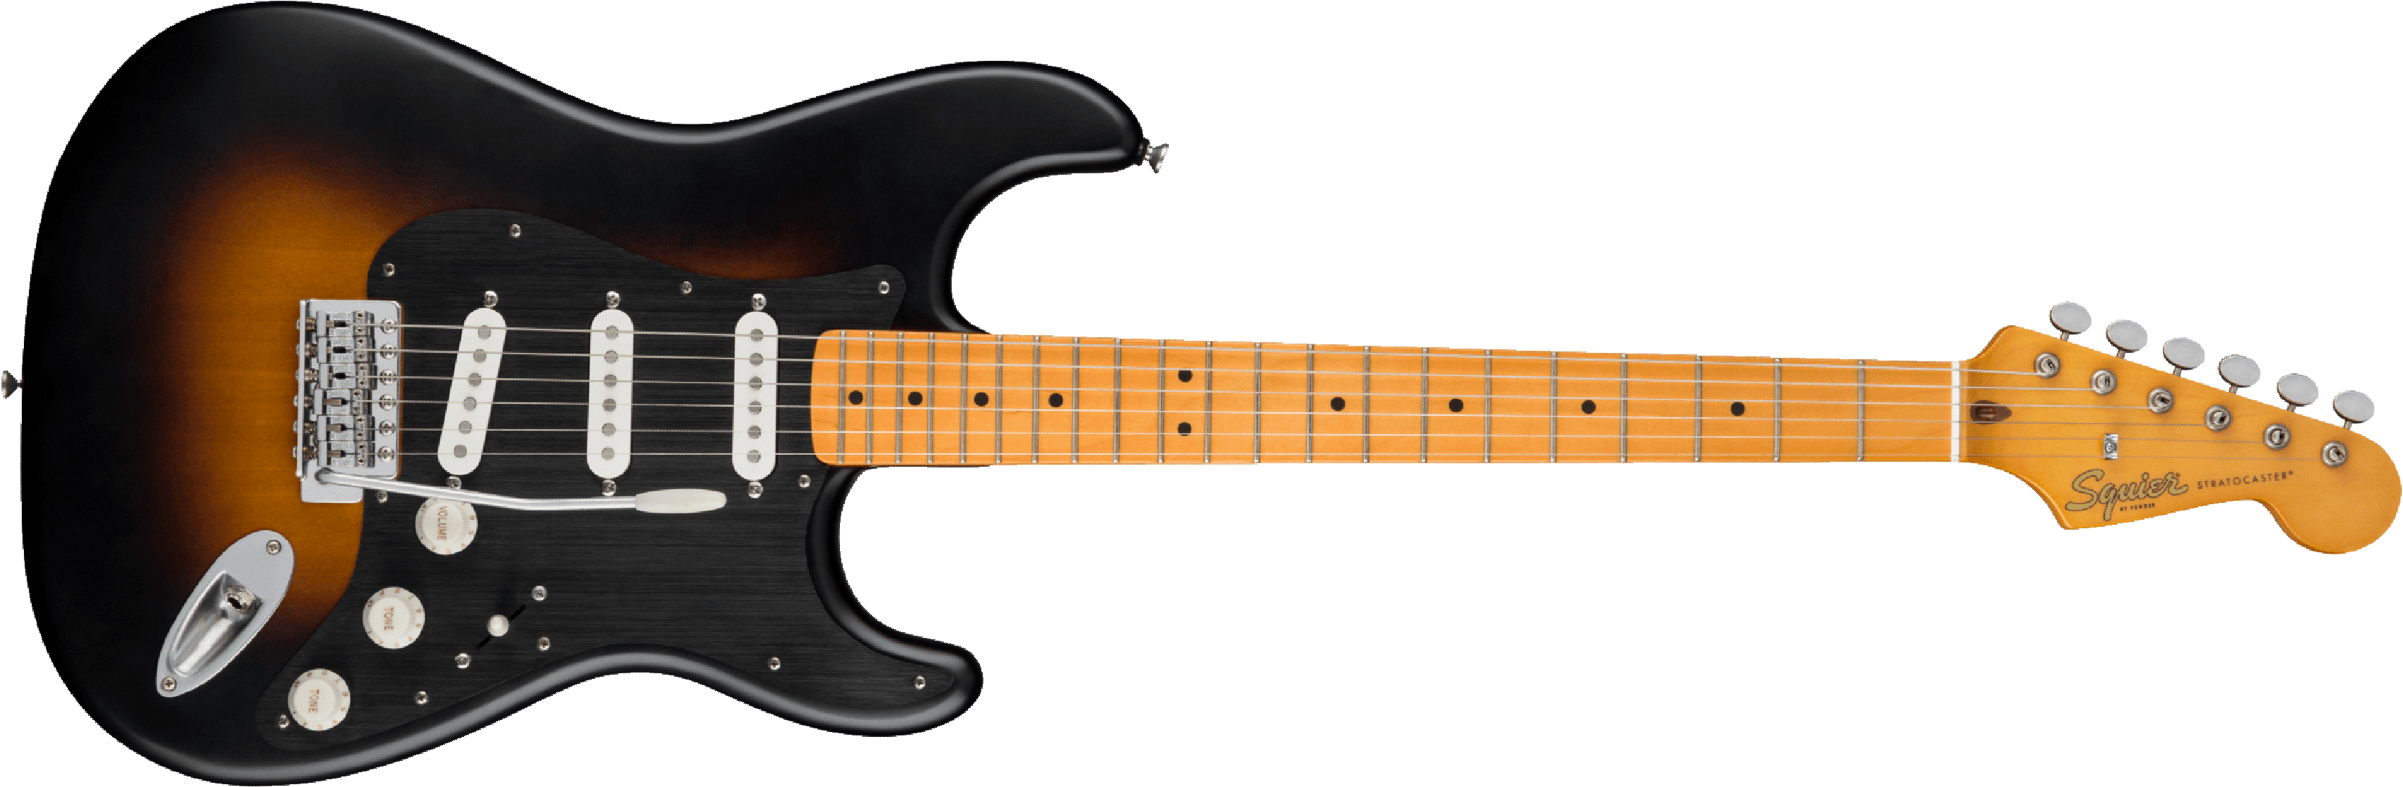 Squier Strat 40th Anniversary Vintage Edition Mn - Satin Wide 2-color Sunburst - Elektrische gitaar in Str-vorm - Main picture